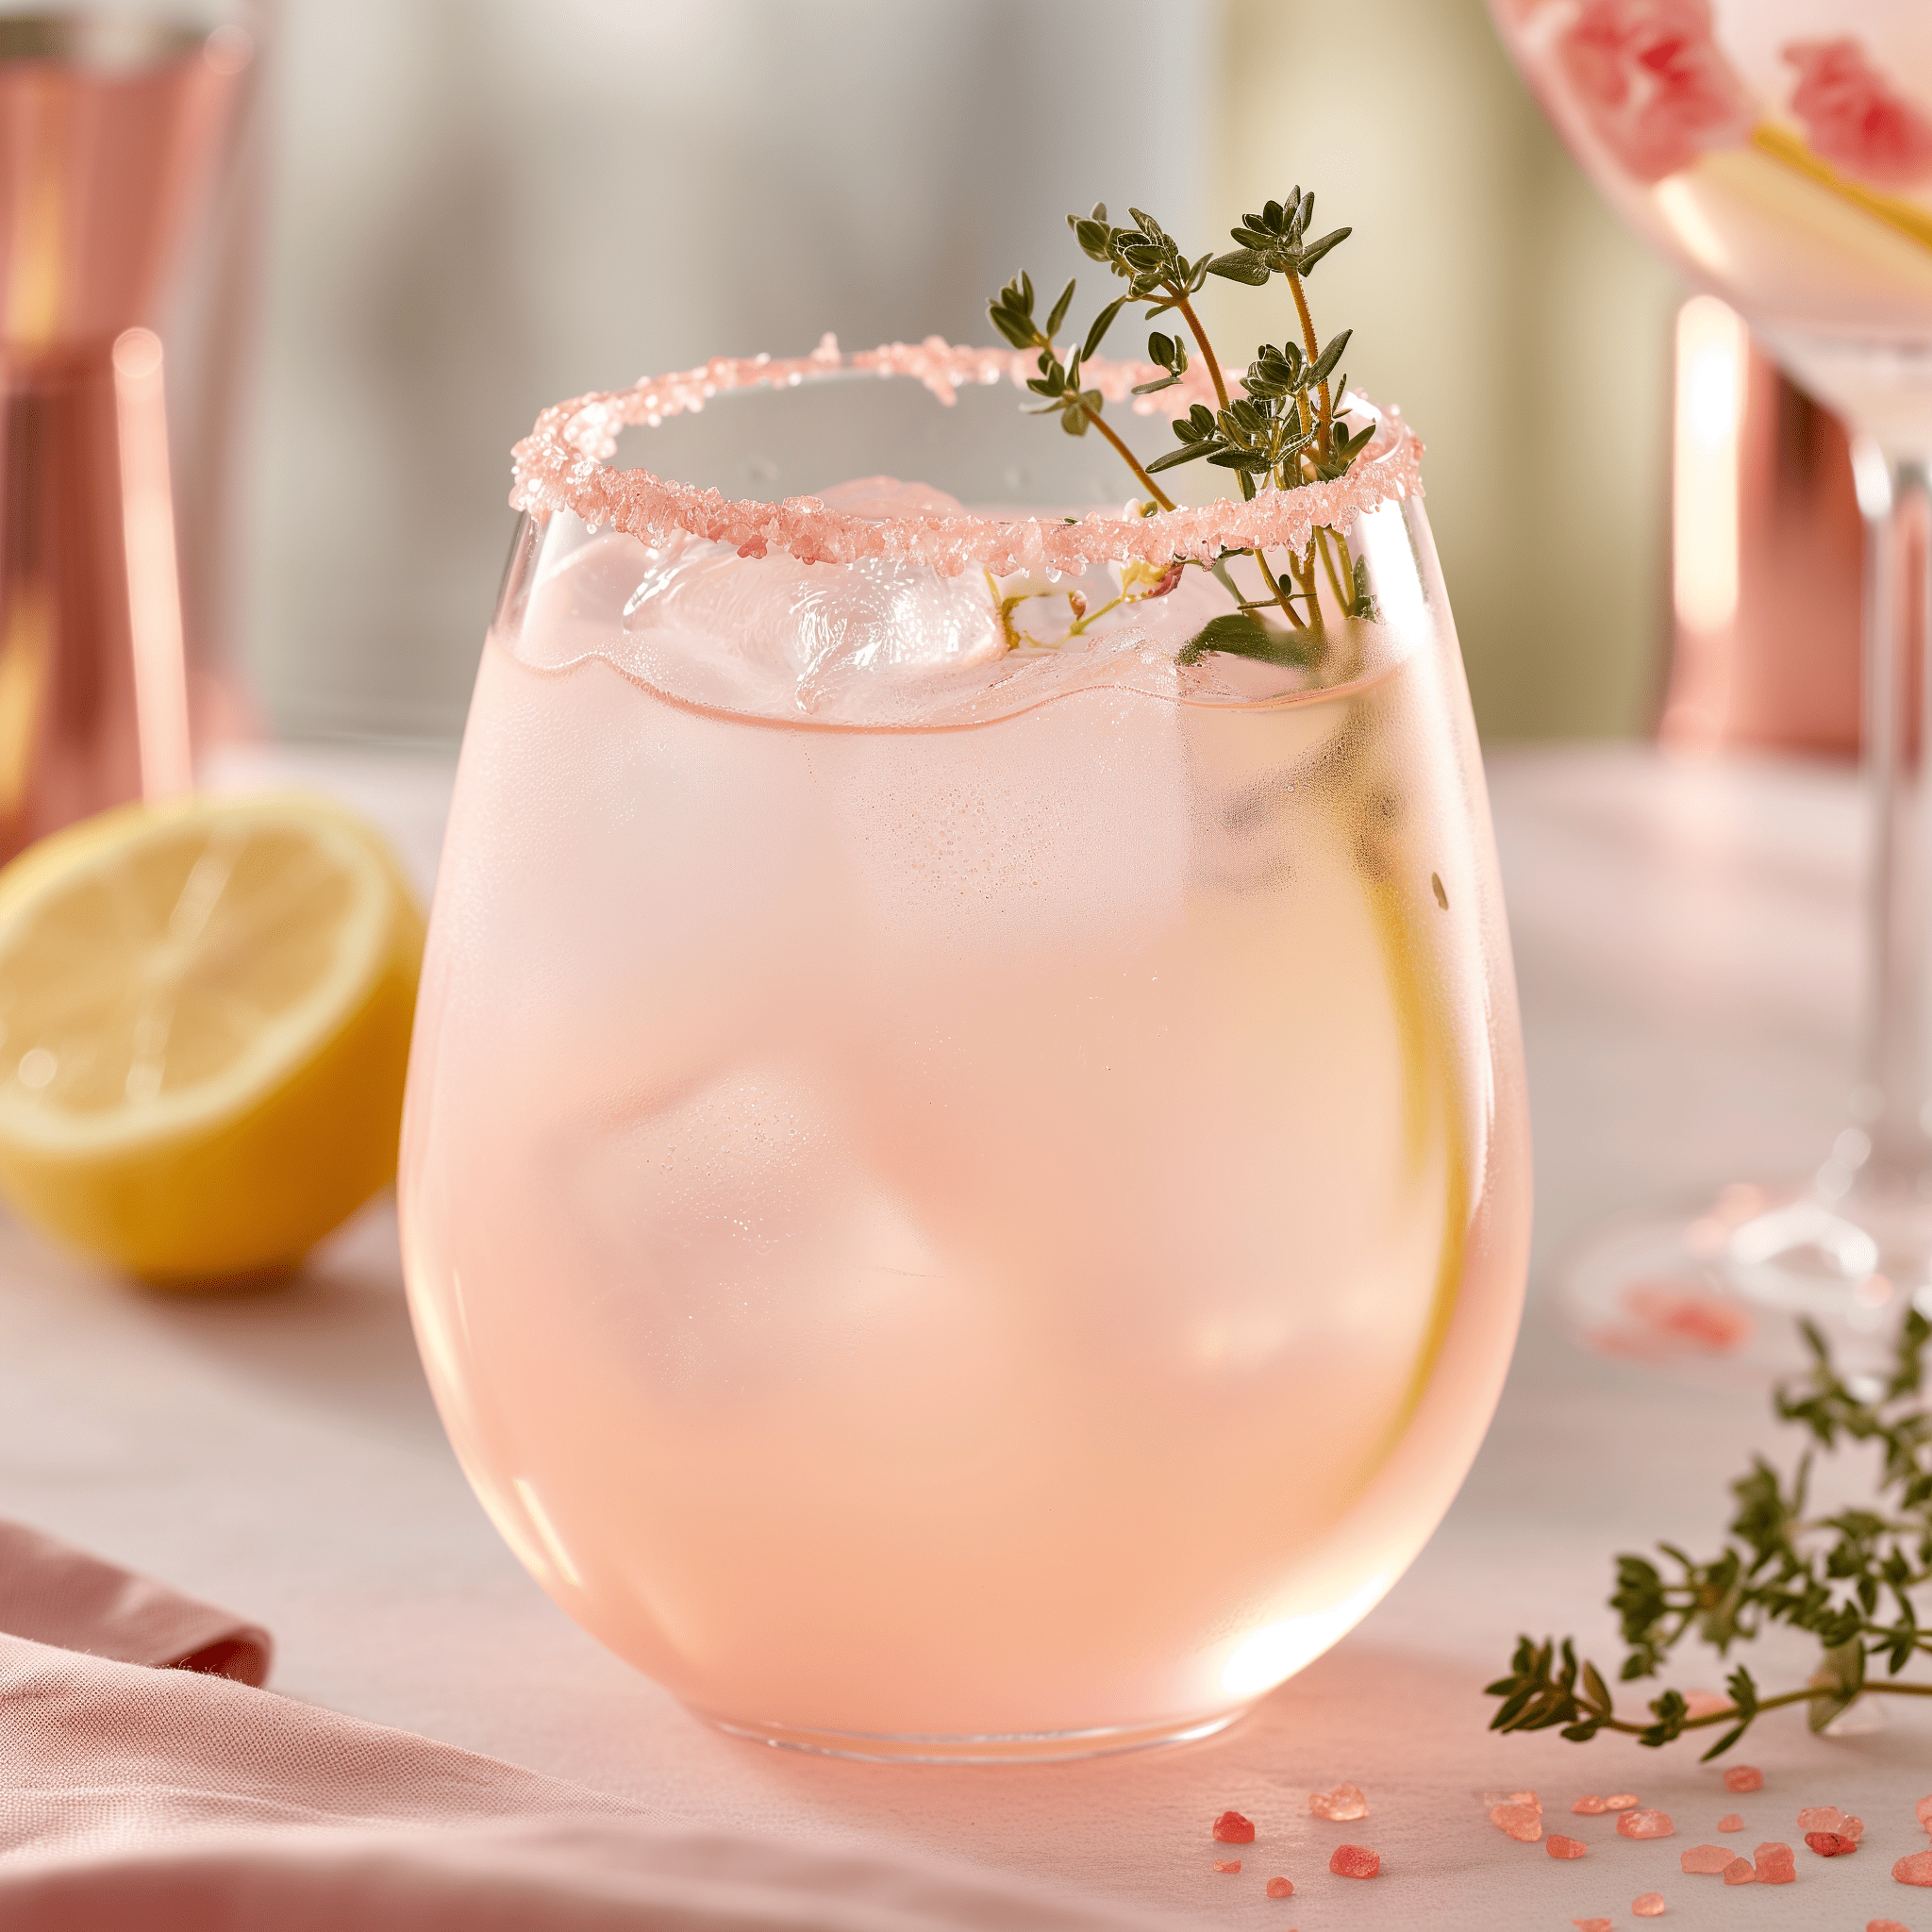 Rose Mocktail Receta - El Rose Mocktail ofrece un sabor refrescante y ligeramente ácido con un dulce matiz floral. La efervescencia del agua con gas añade ligereza a la bebida, mientras que el tomillo proporciona una nota terrosa que equilibra la dulzura de la miel y el toque de jengibre.